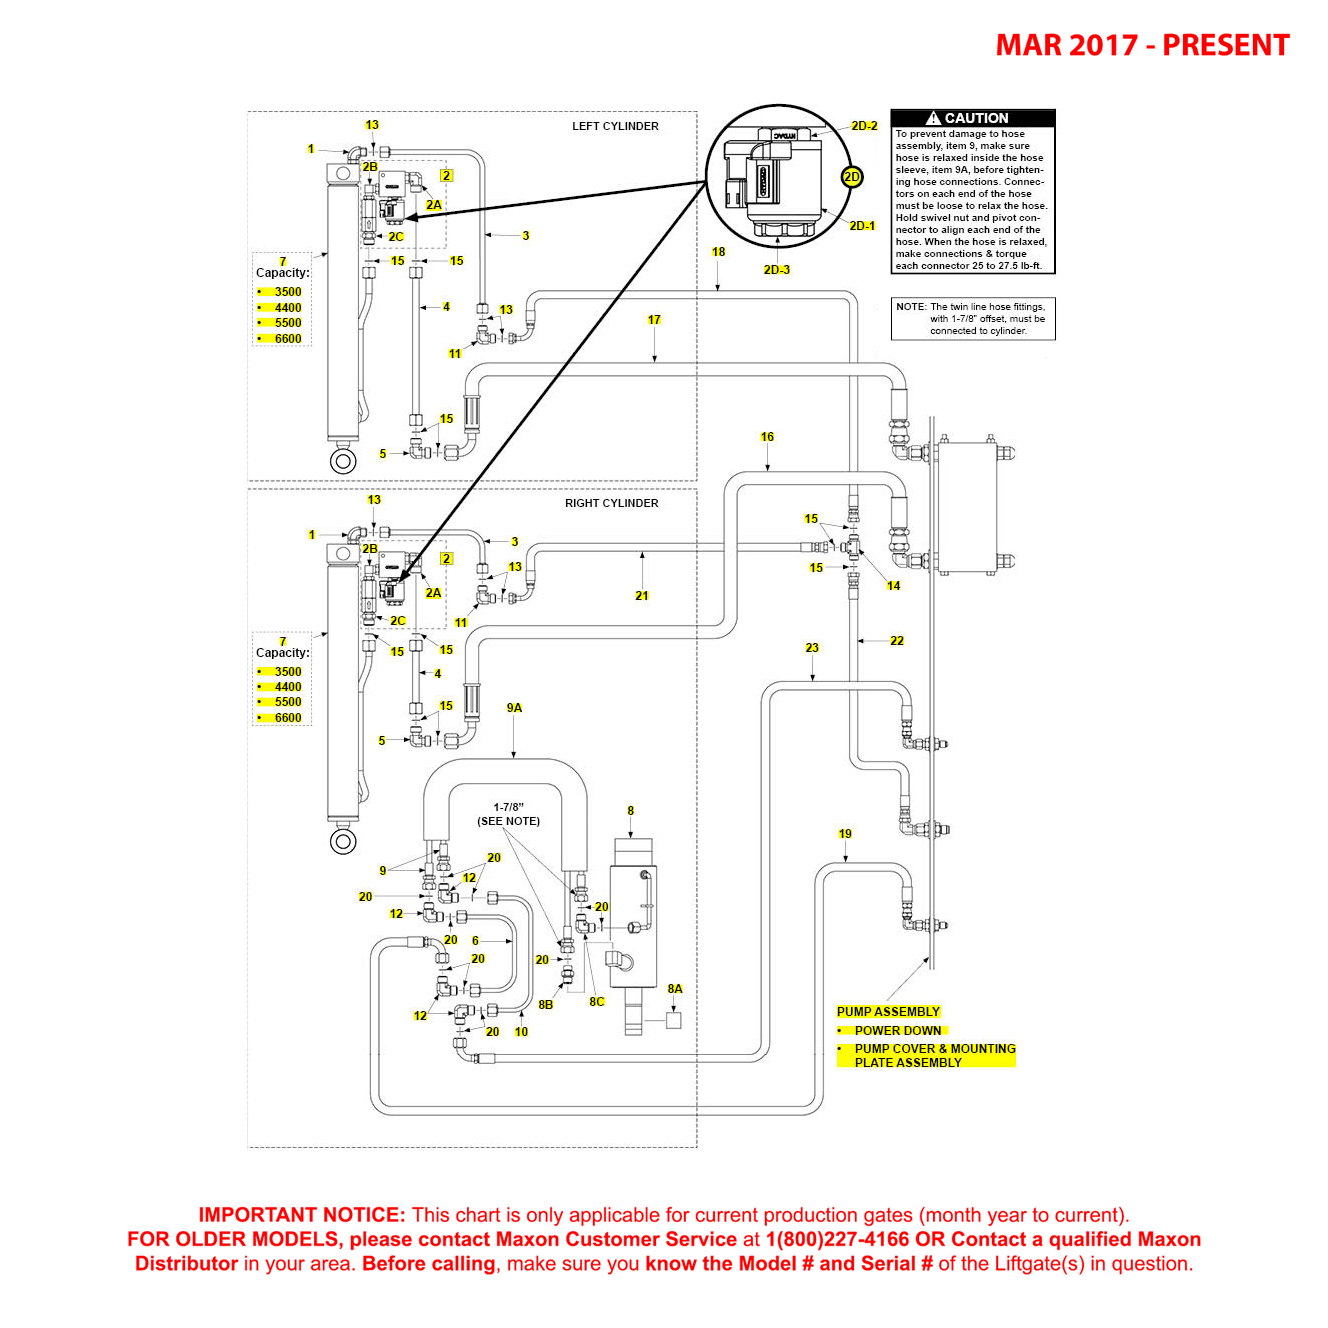 Maxon BMR (Mar 2017 - Present) Power Down Bucher Hydraulics Systems Diagram